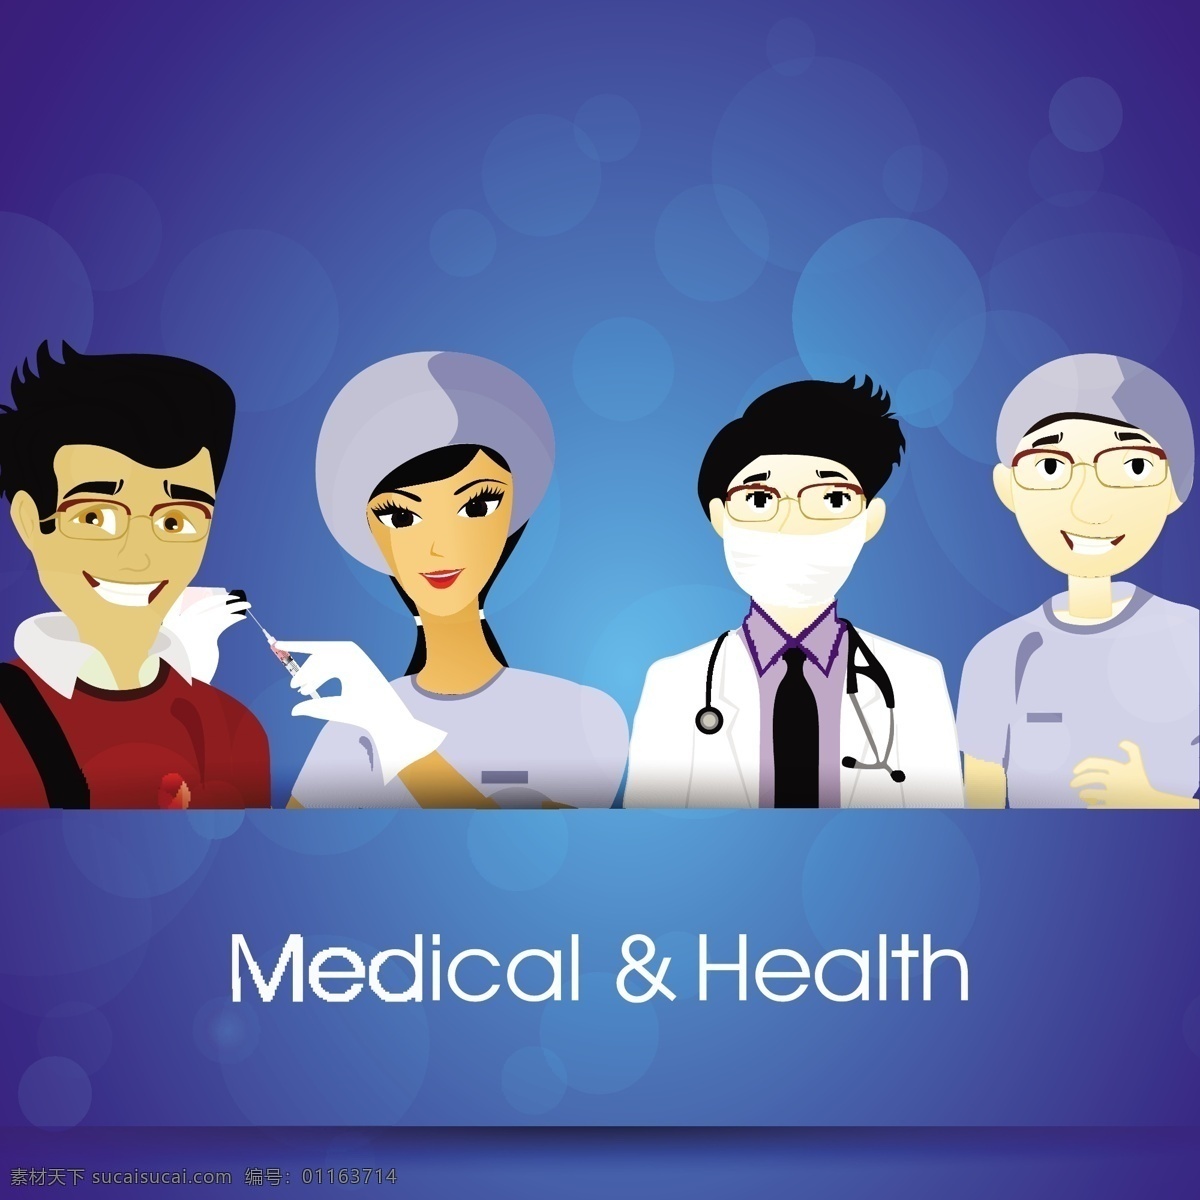 蓝色 卡通 医生 背景 模板下载 卡通人物 职业人物 医疗保健 行业标志 标志图标 矢量素材